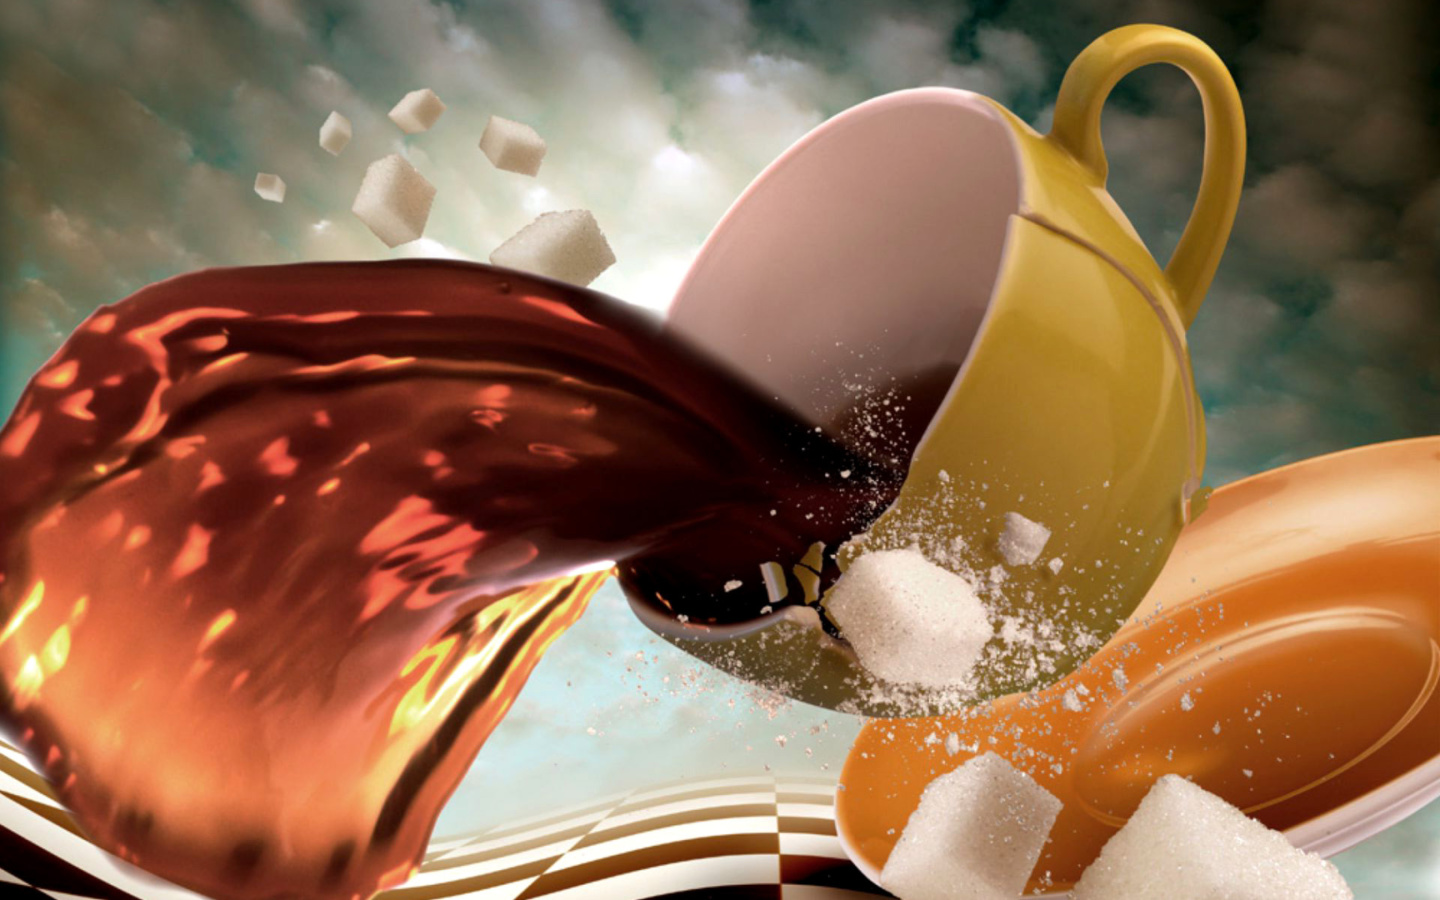 Обои Surrealism Coffee Cup with Sugar cubes 1440x900